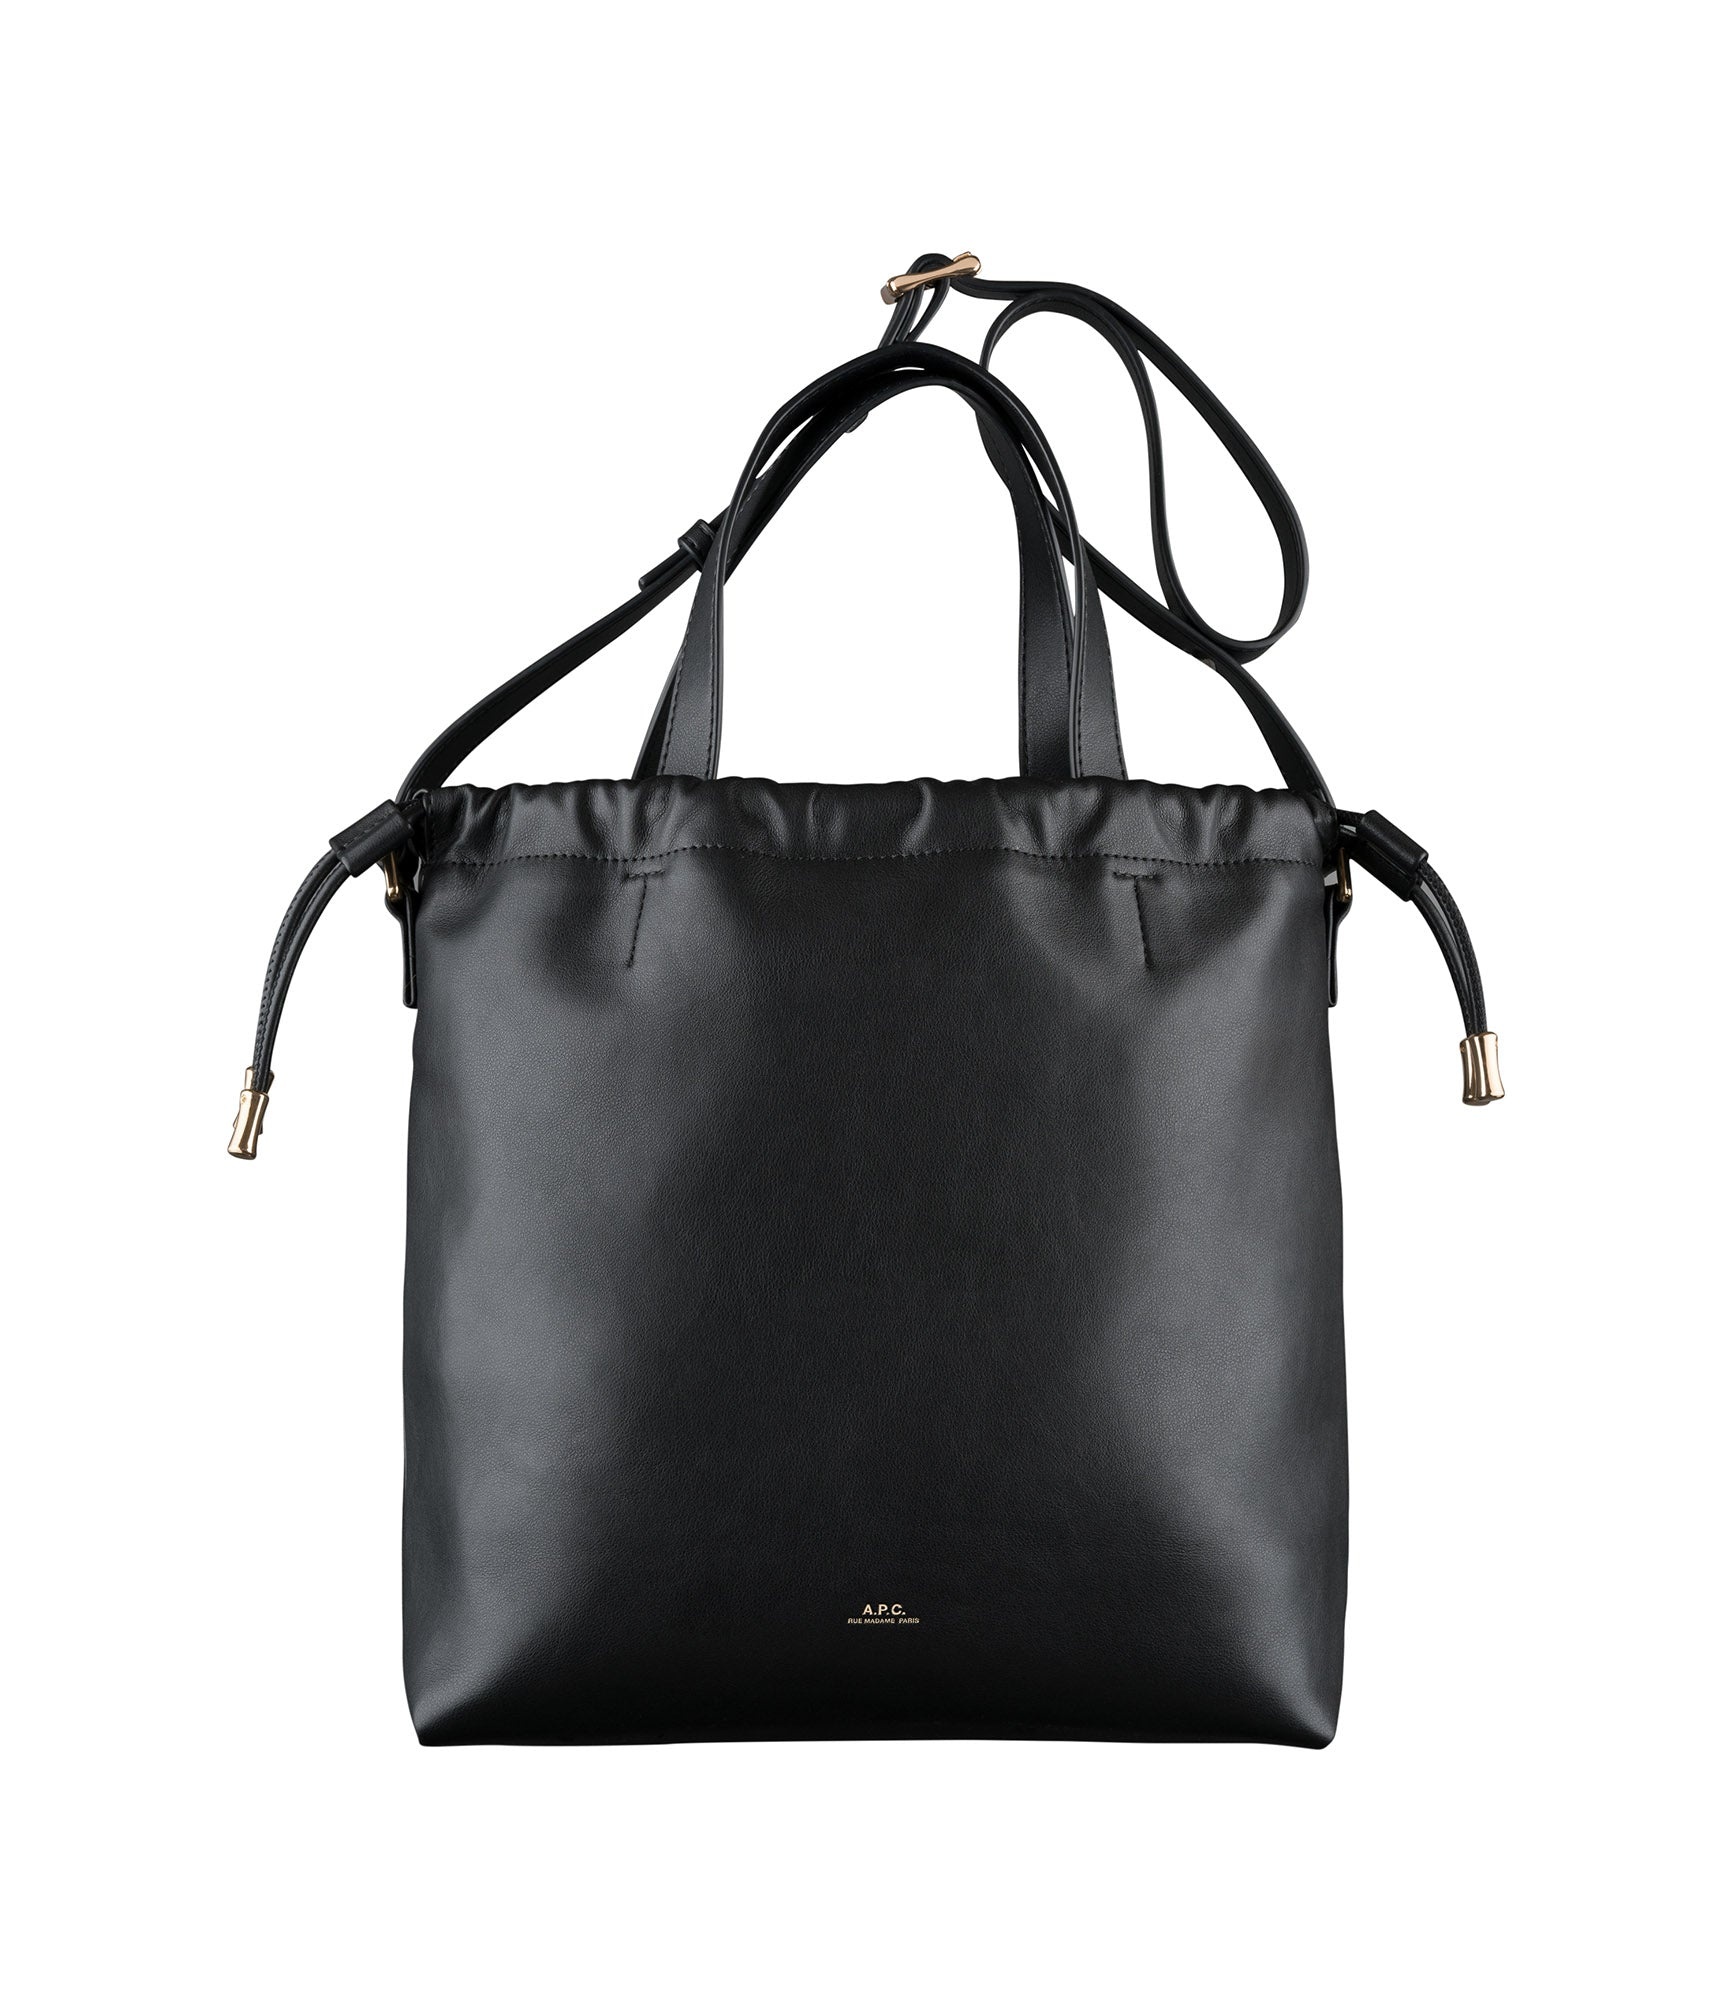 Ninon shopping bag - 1